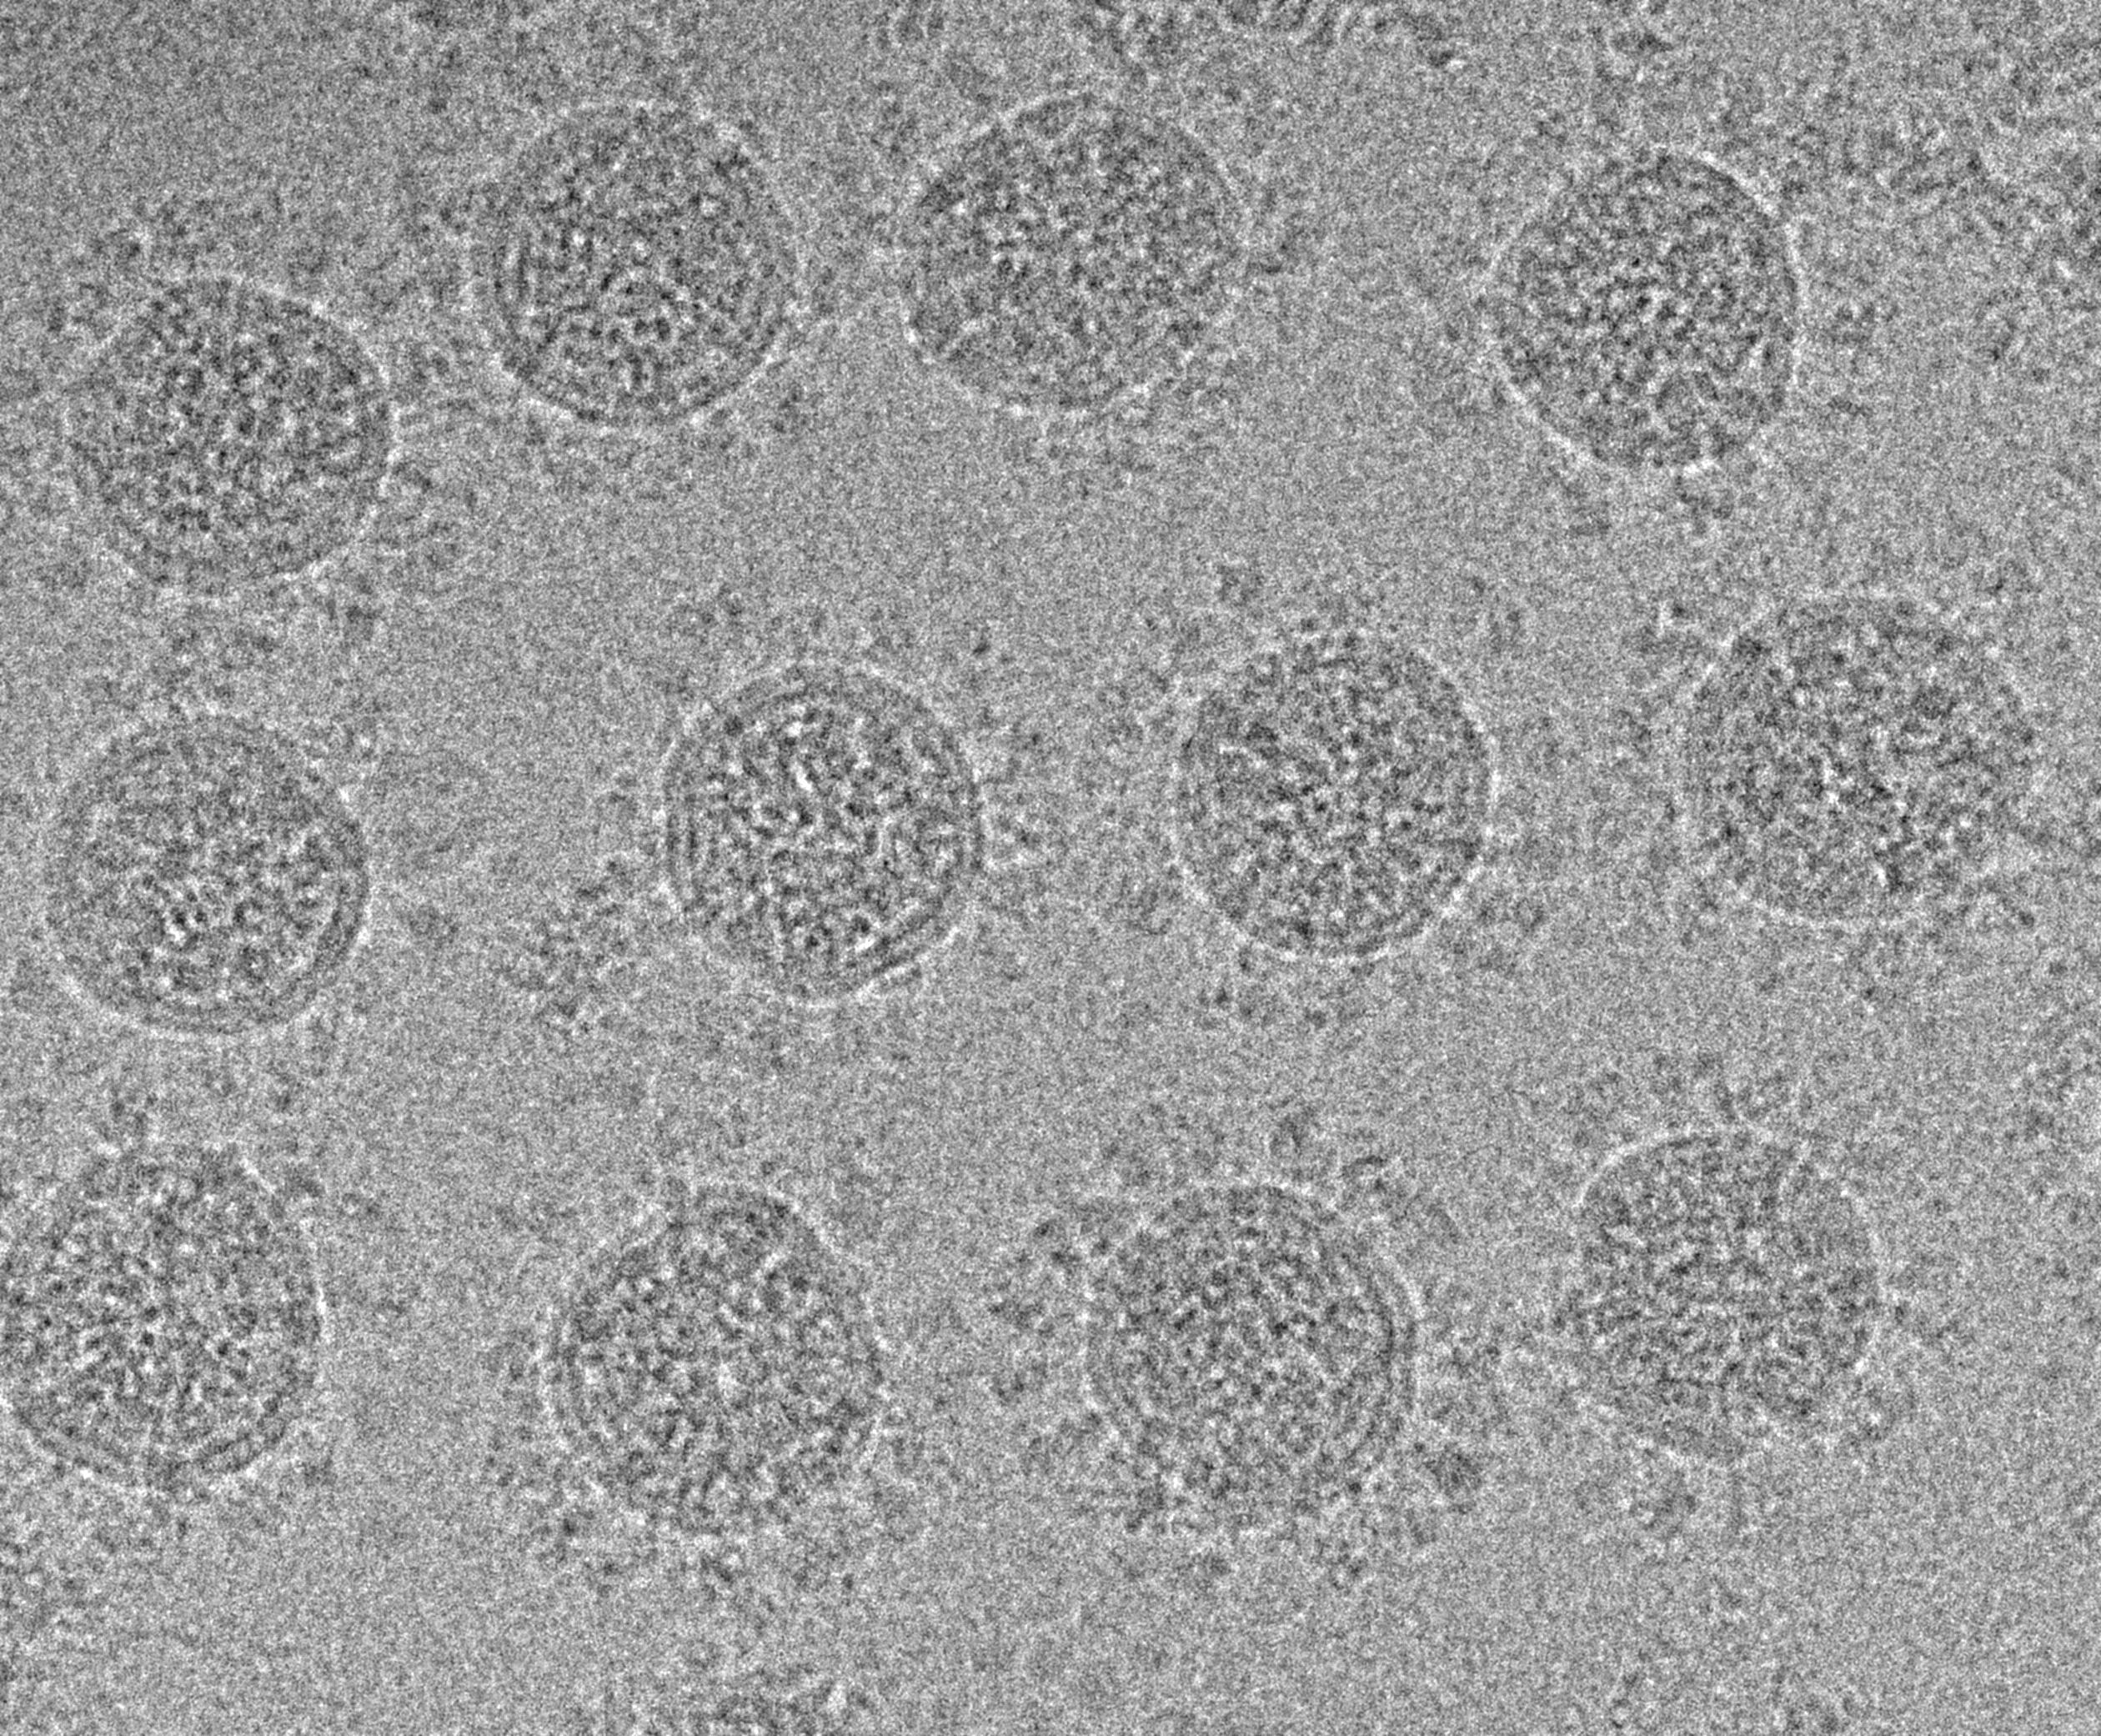 Image par microscopie cryoélectronique de suspensions de virions SARS-CoV-2 concentrées et fixées au PFA. Crédit: laboratoire de Gisou van der Goot et D. Demurtas (plateforme BioEM de l’EPFL).